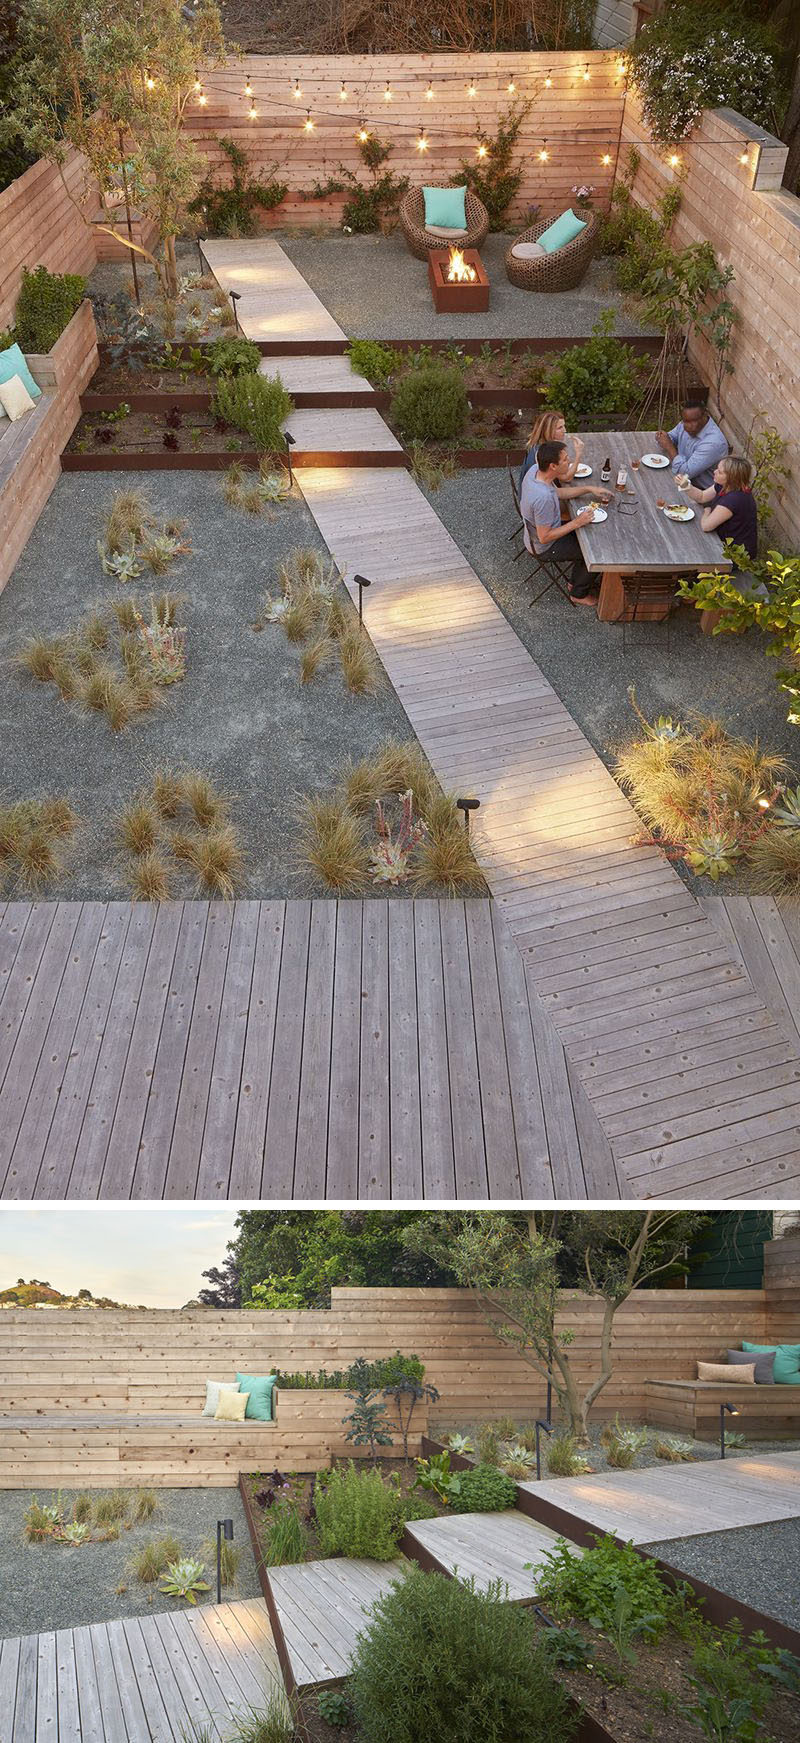 Landscaping Design Ideas - 11 Backyards Designed For ...